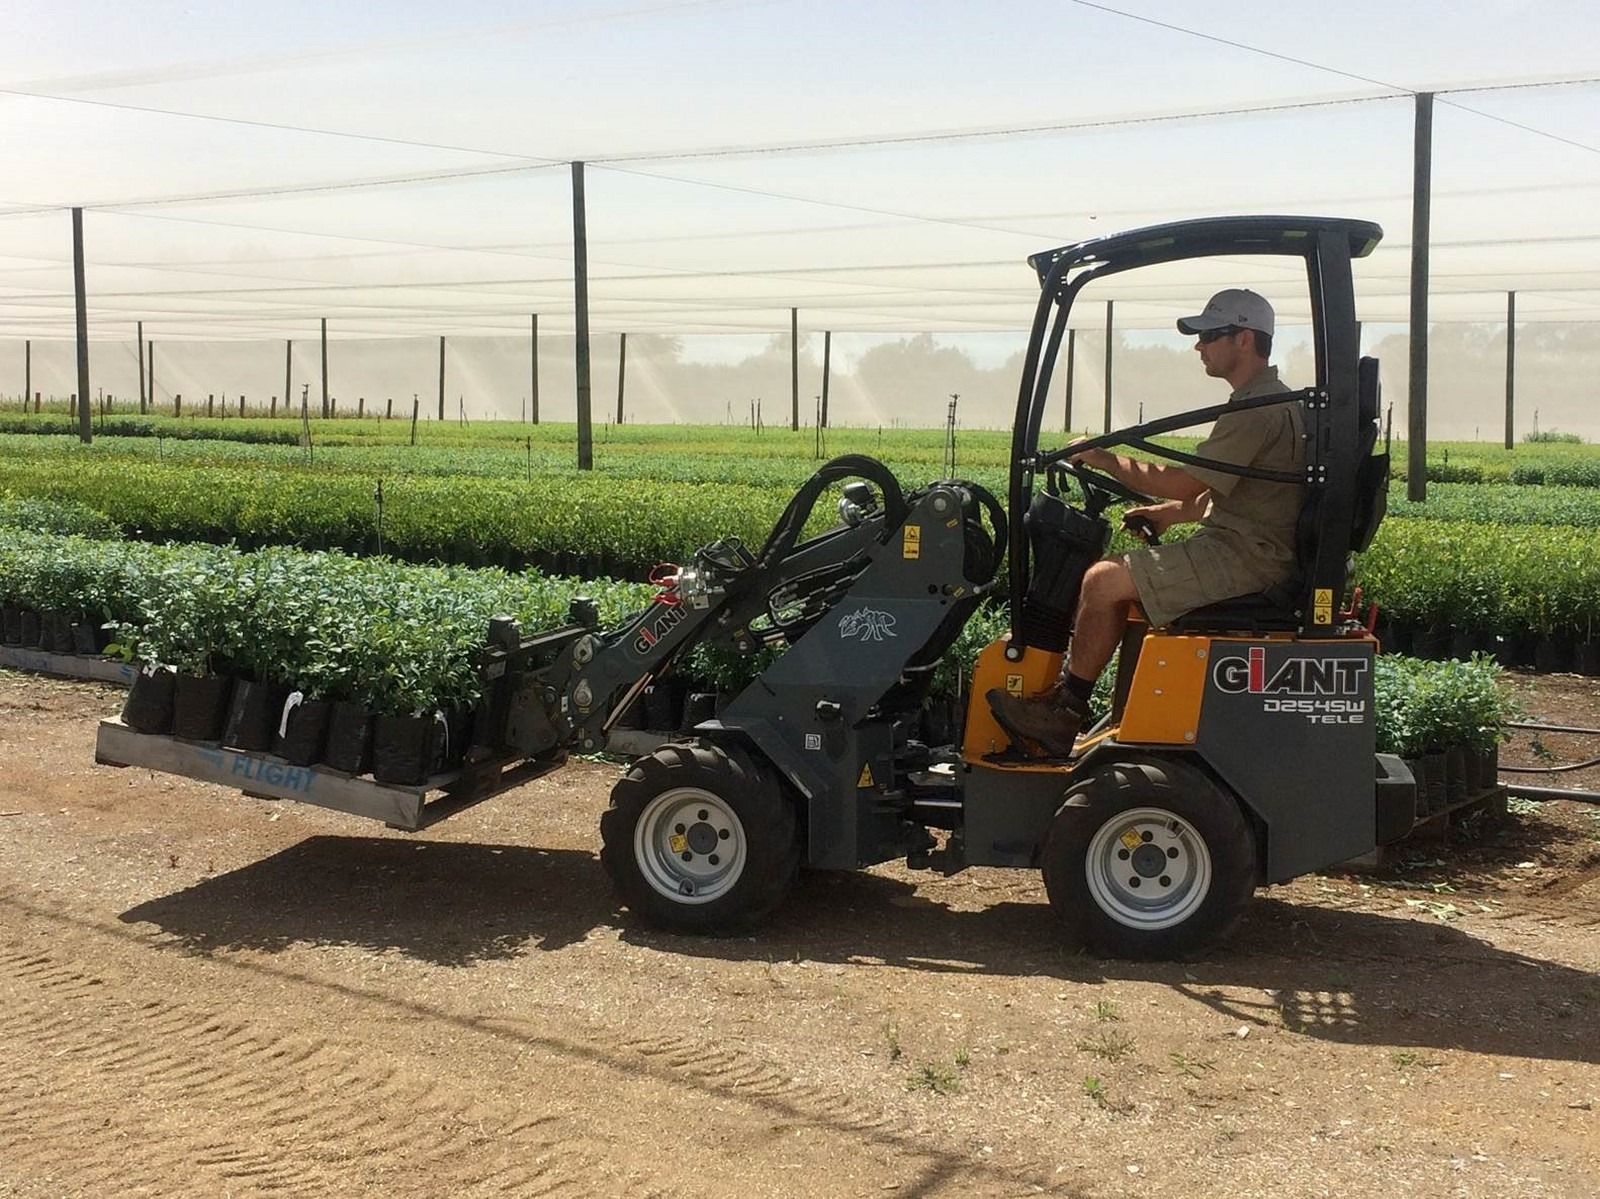 Employé conduisant la mini-chargeuse GIANT D254SW TELE qui transporte une palette de plantes dans un champs d'horticulture.